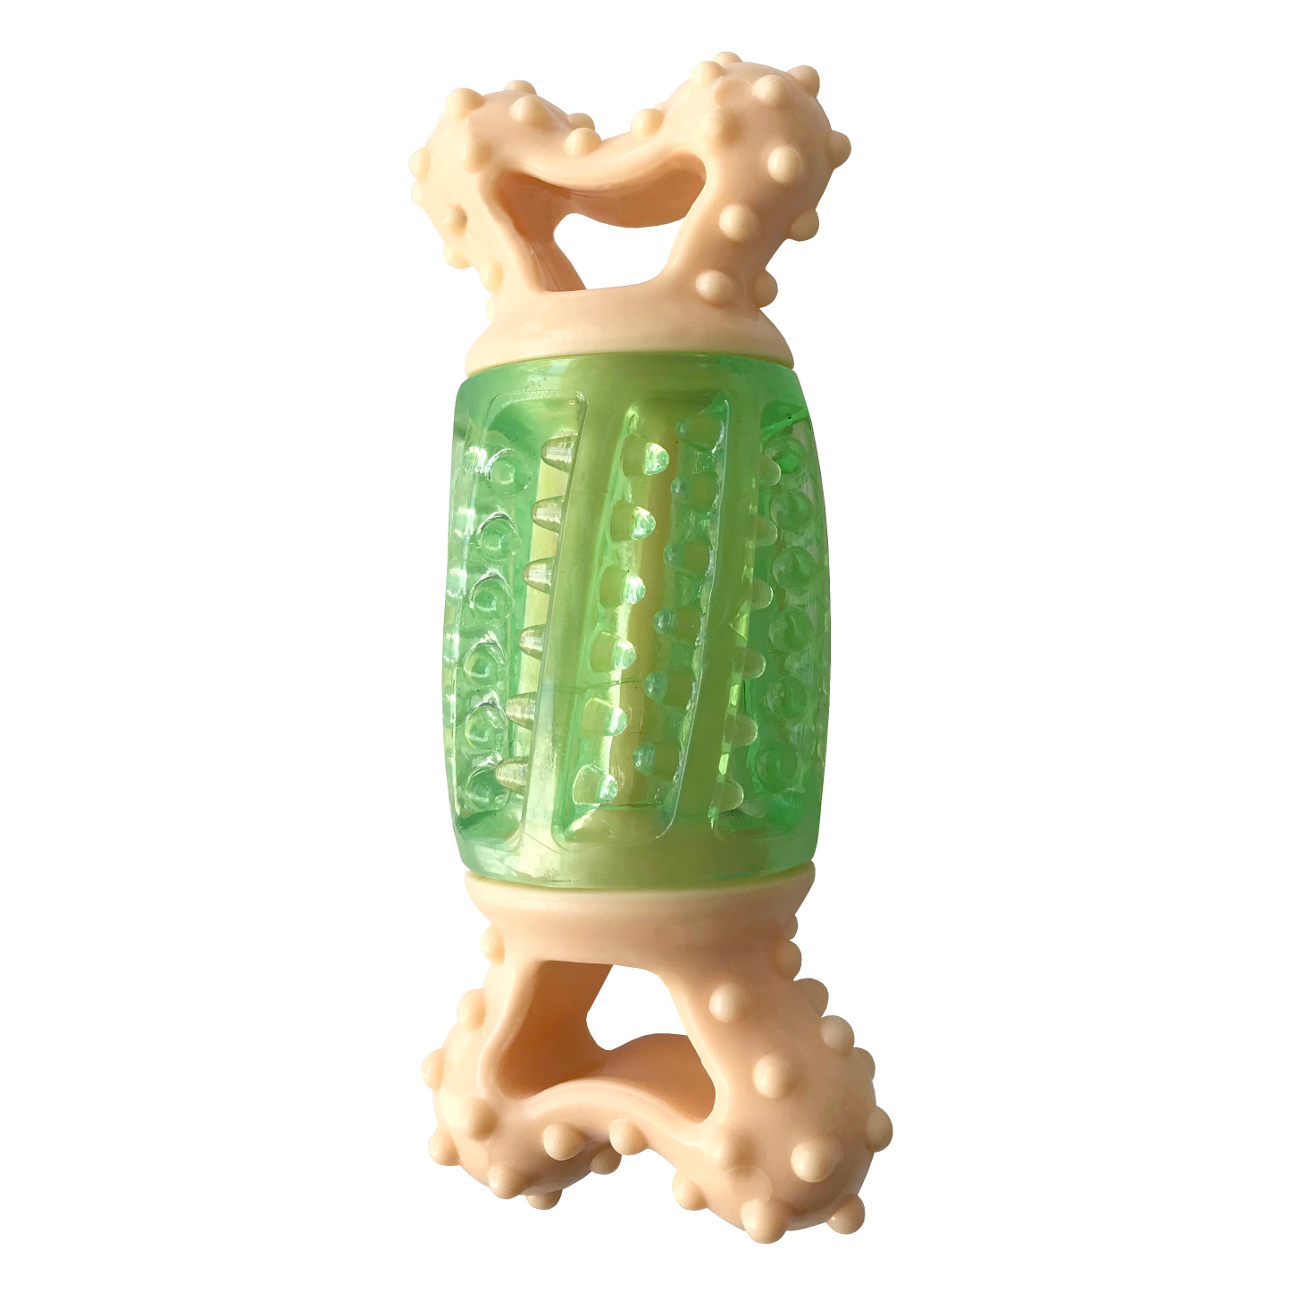 Lisinya205 Sağlam Plastik Sesli Dental Köpek Oyuncağı 13x4cm Yeşil